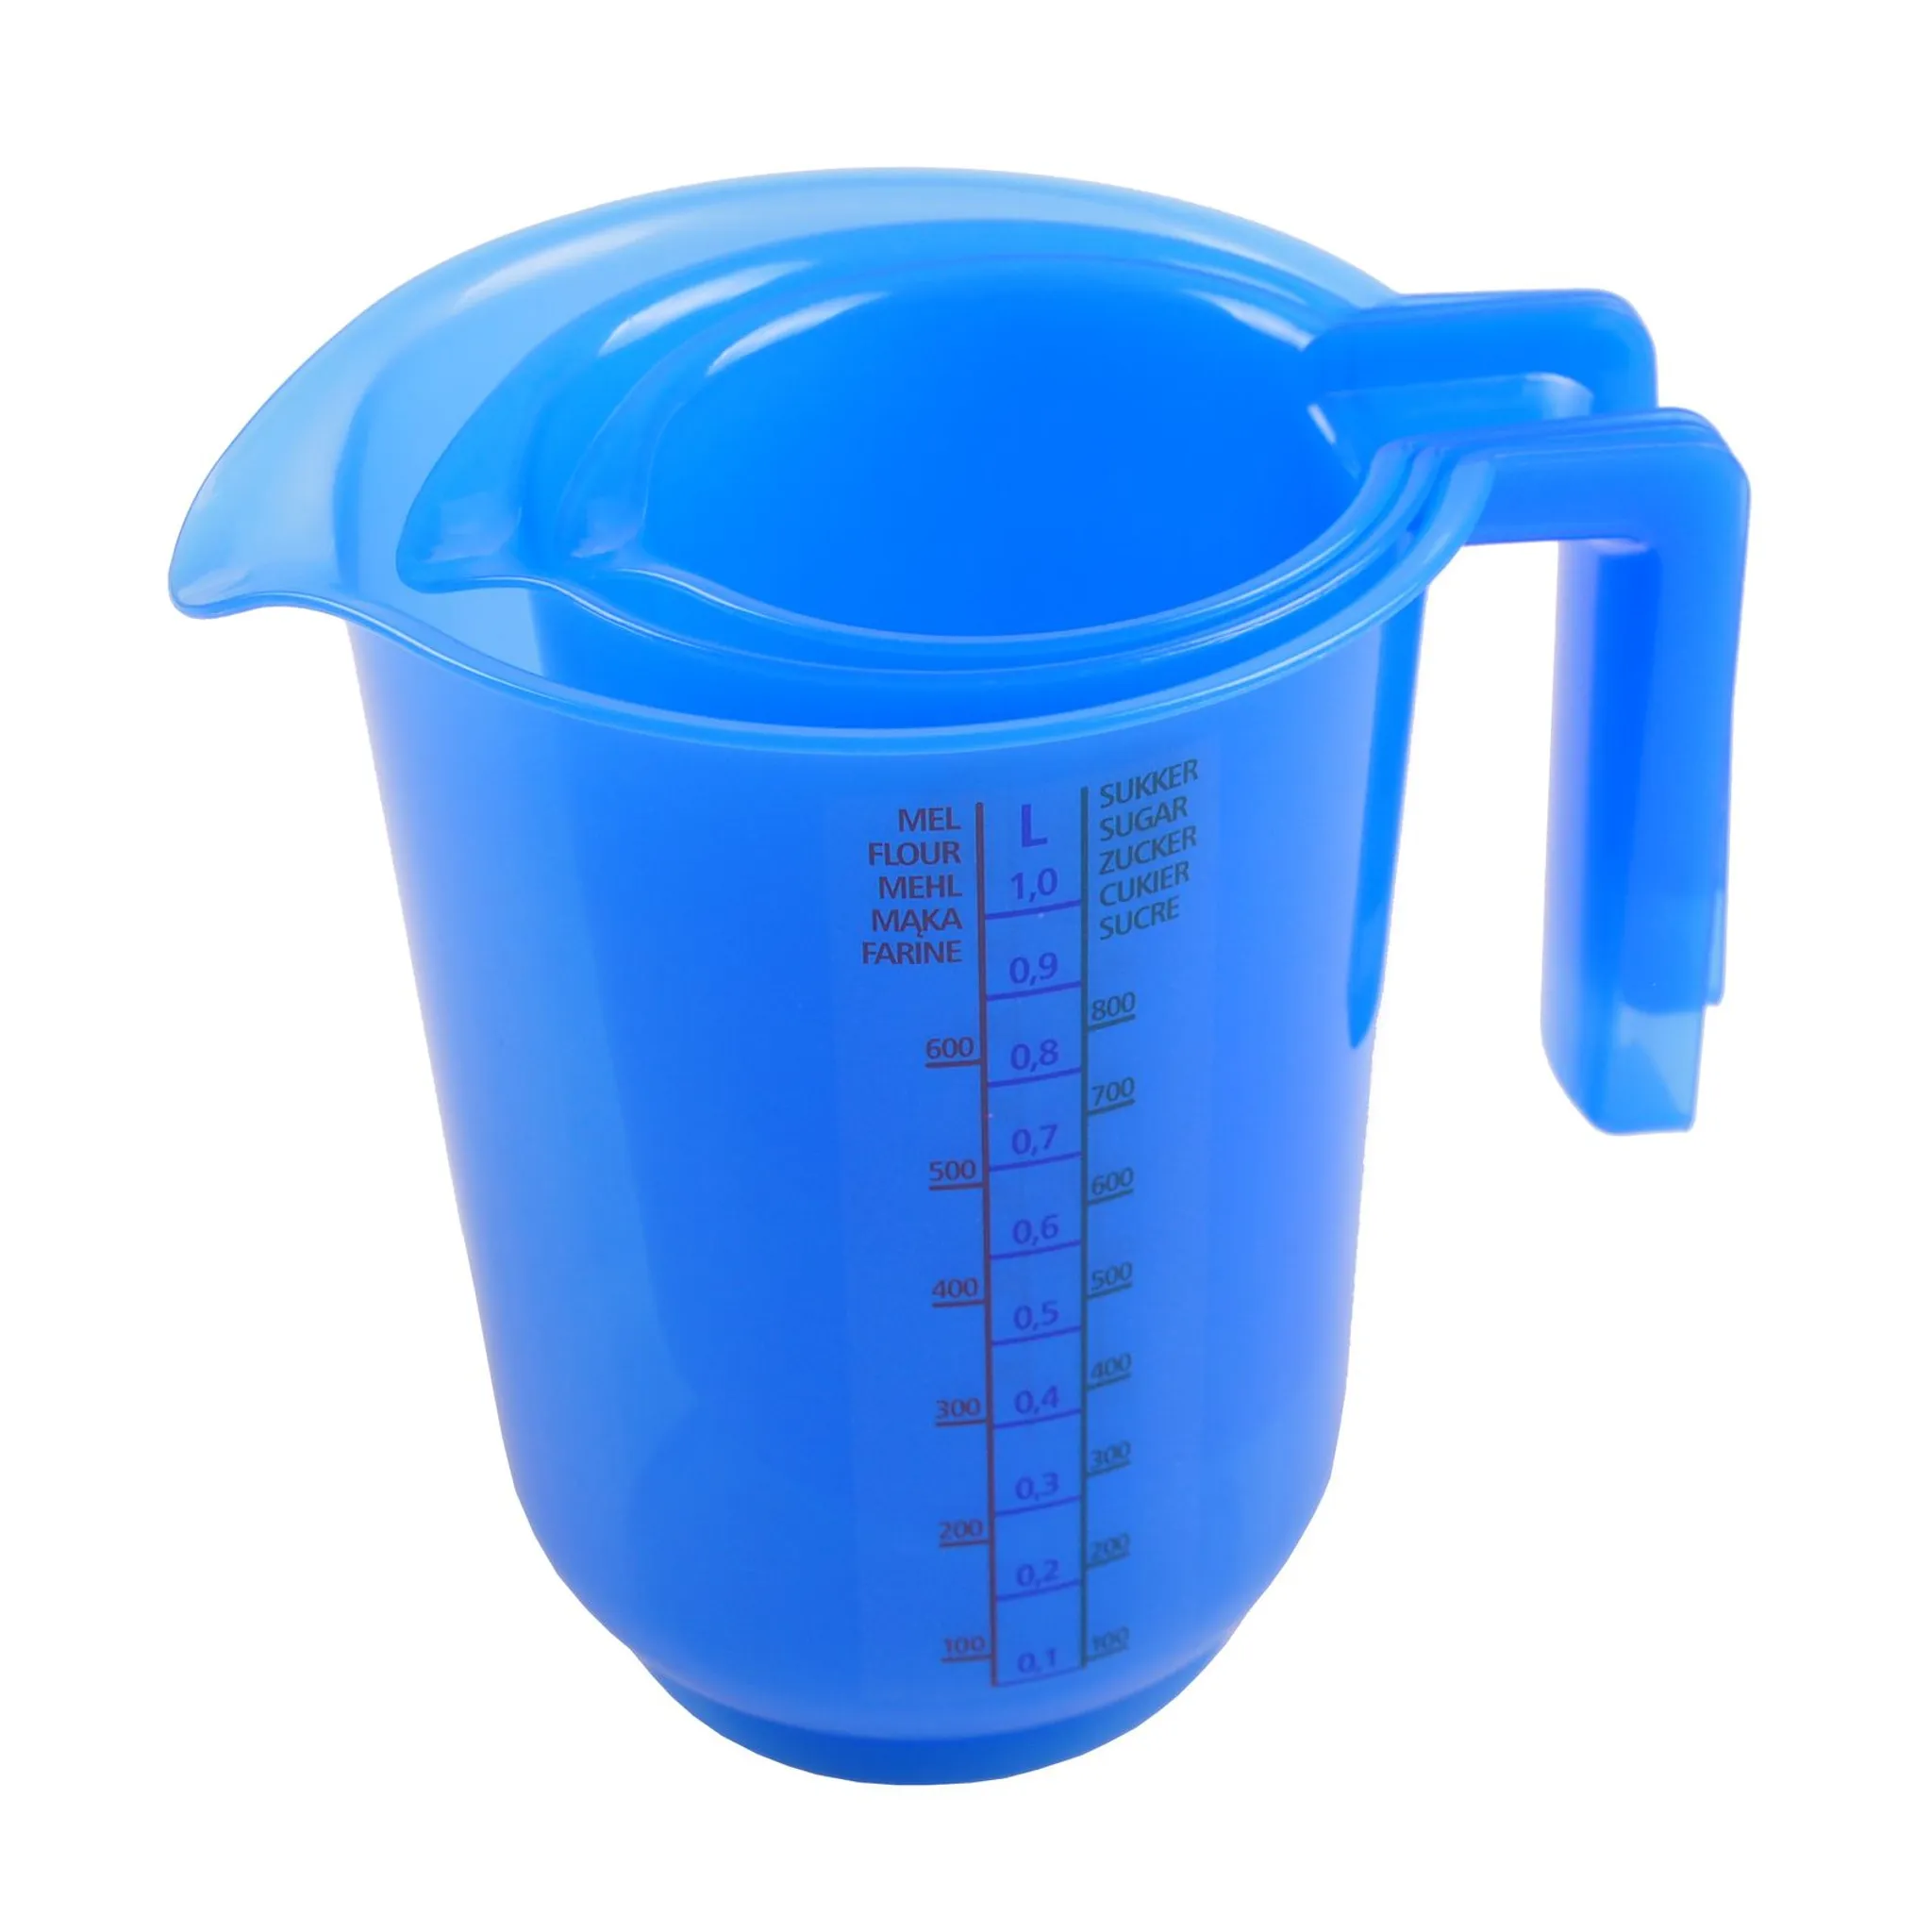 GEFU Messbecher METI, 1000 ml, Glas, Ausgießnase, 1 Liter, Skalierung für:  ml / ccm / fl. oz / cups (US) / Zucker / Mehl / Reis